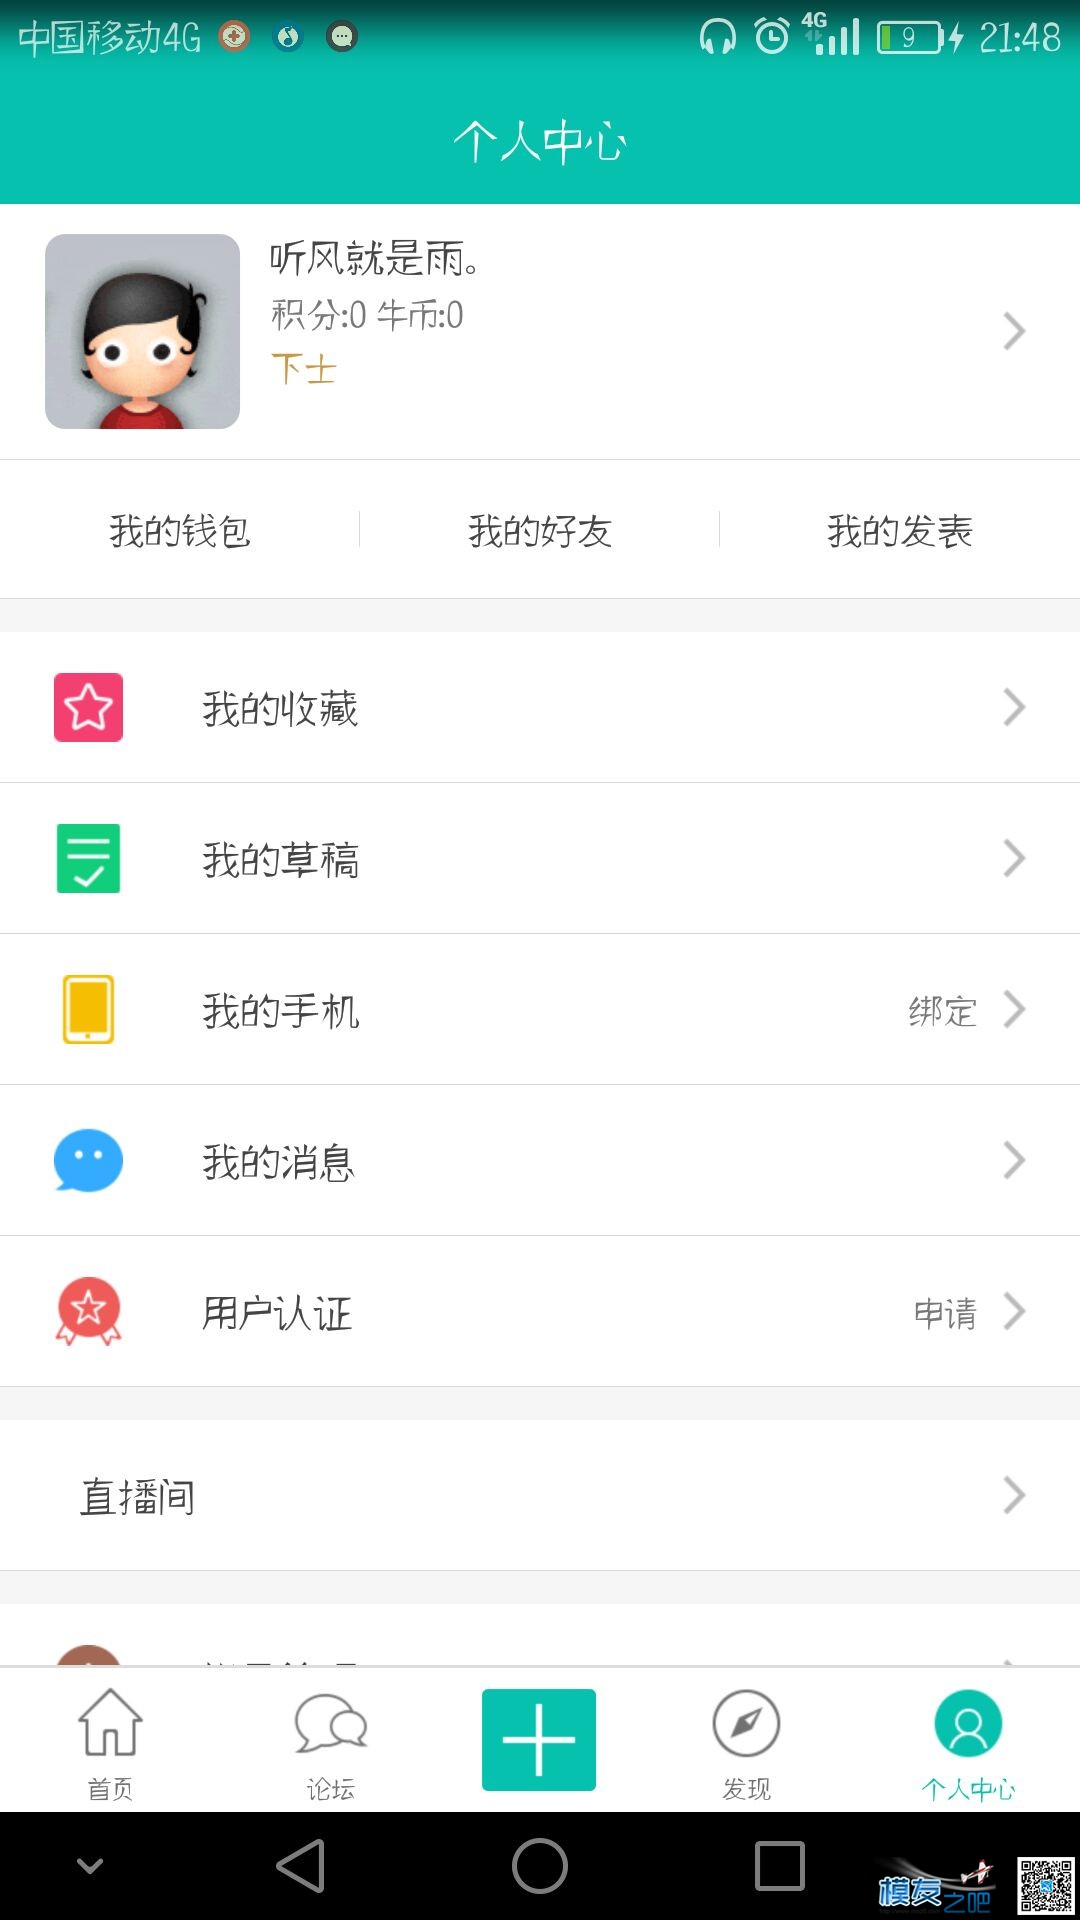 【模友之吧】100个aomway5.8G-500mw图传用于论坛推广！  作者:zhangyiyun2014 4539 